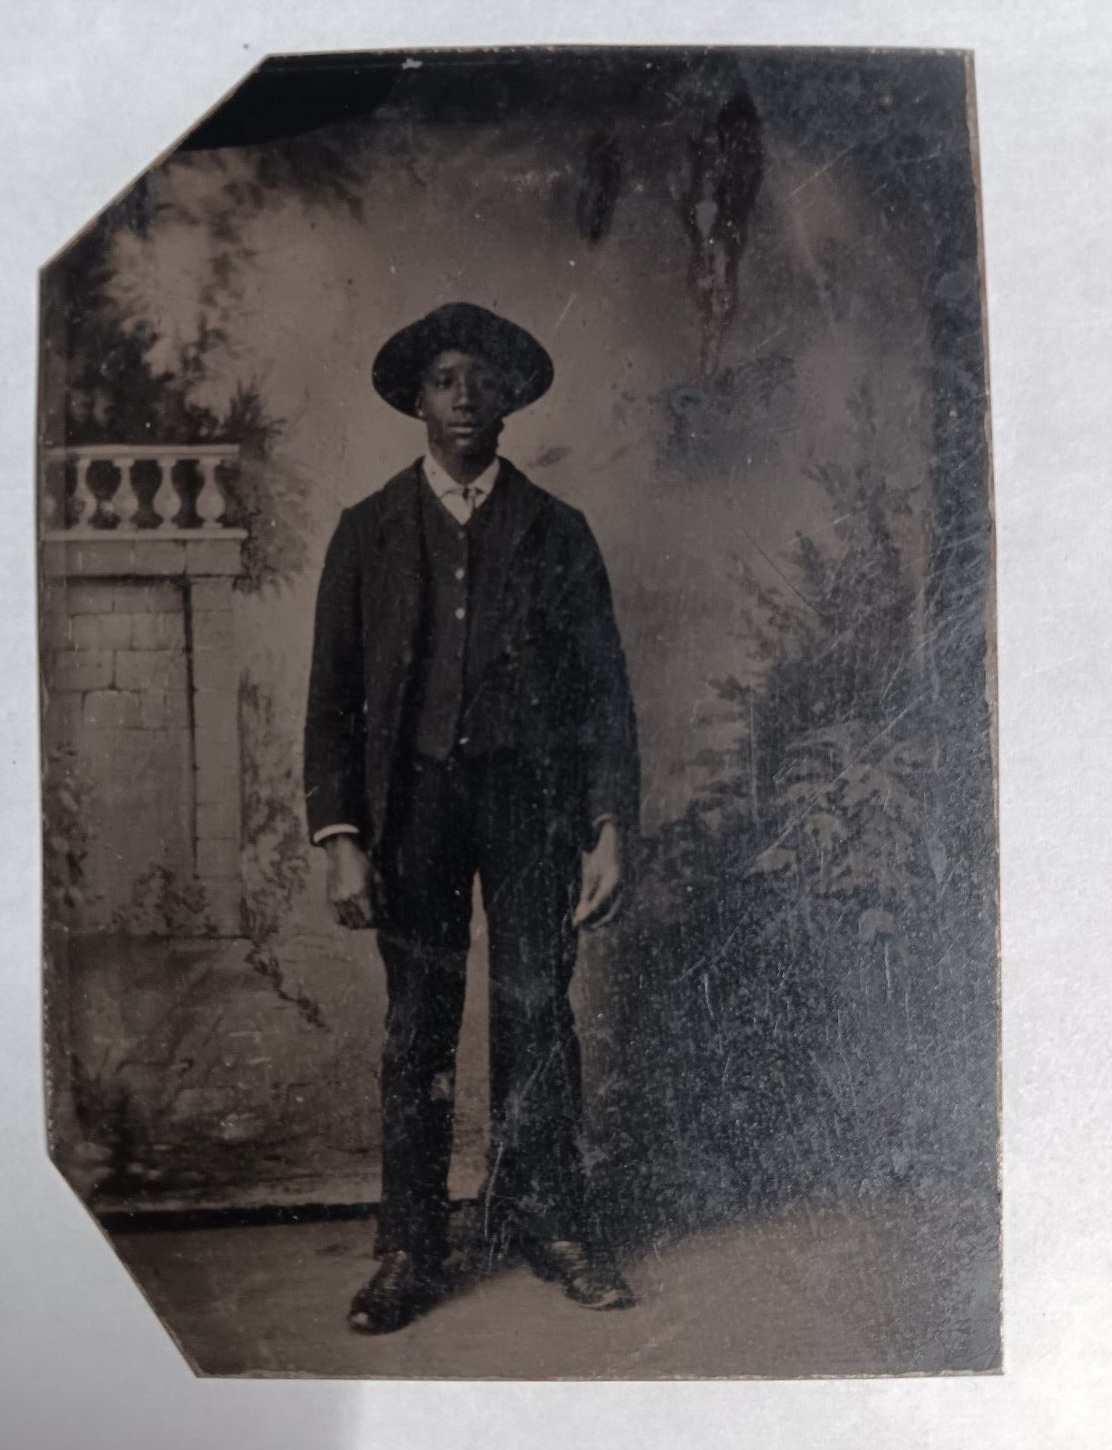 1860-1879 Civil War Era African American Black Man Tin Type Photo 3 1 /4 x 2 1/4